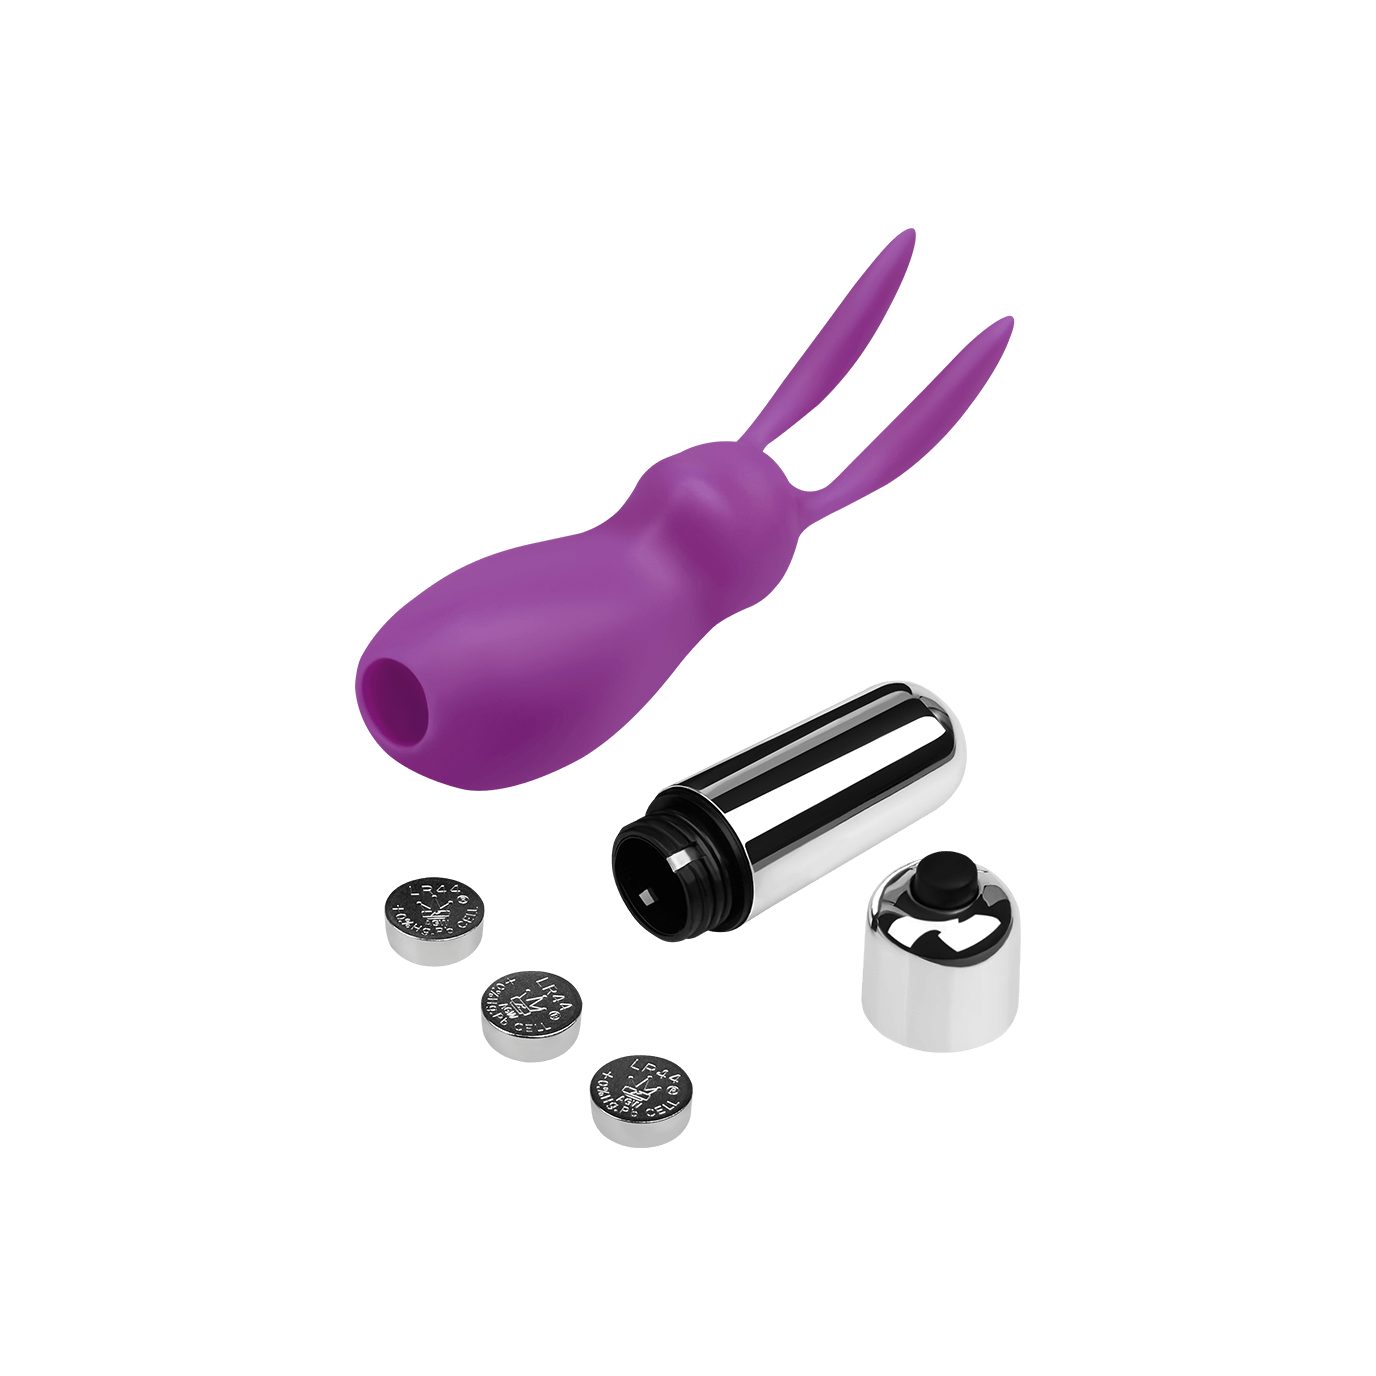 Minivibrator hasenförmig wasserdicht, 'Häschen-Bullet', Violett EIS 11.5cm, Auflege-Vibrator EIS